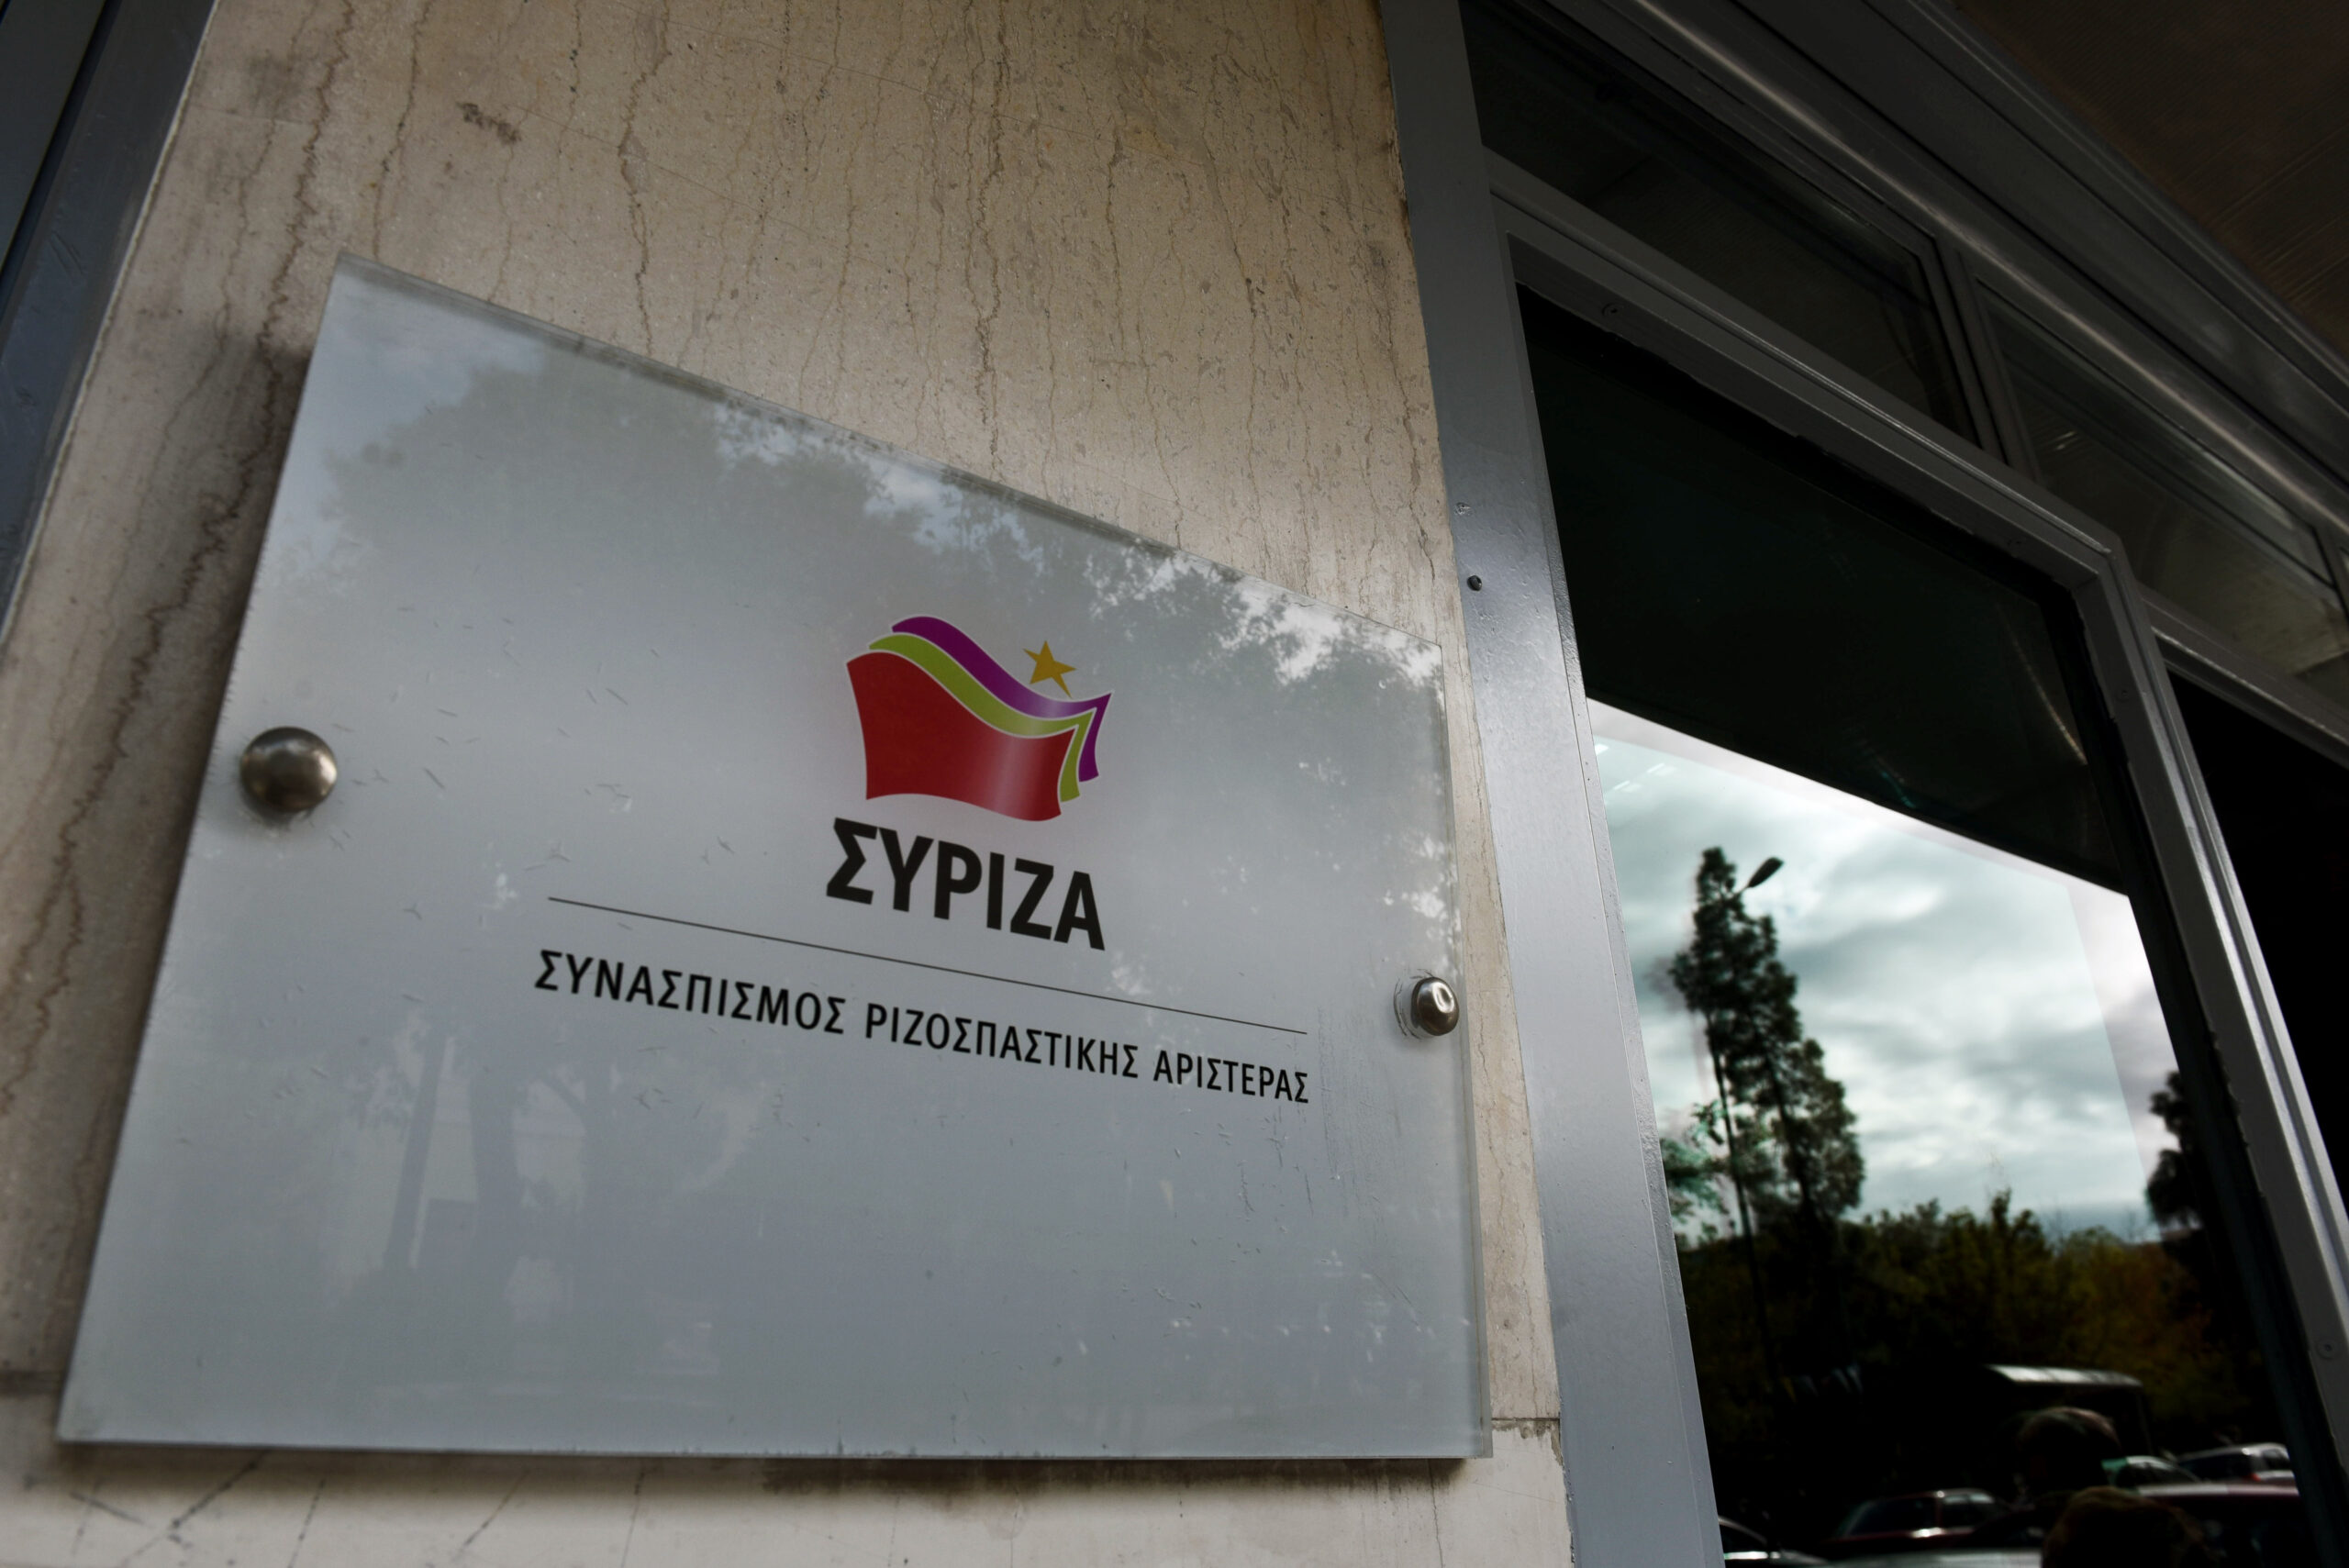 ΣΥΡΙΖΑ ΠΣ: Ο κύκλος της ήττας έκλεισε – Μήνυμα των πολιτών ότι δεν δέχονται τη χειραγώγηση της ψήφου